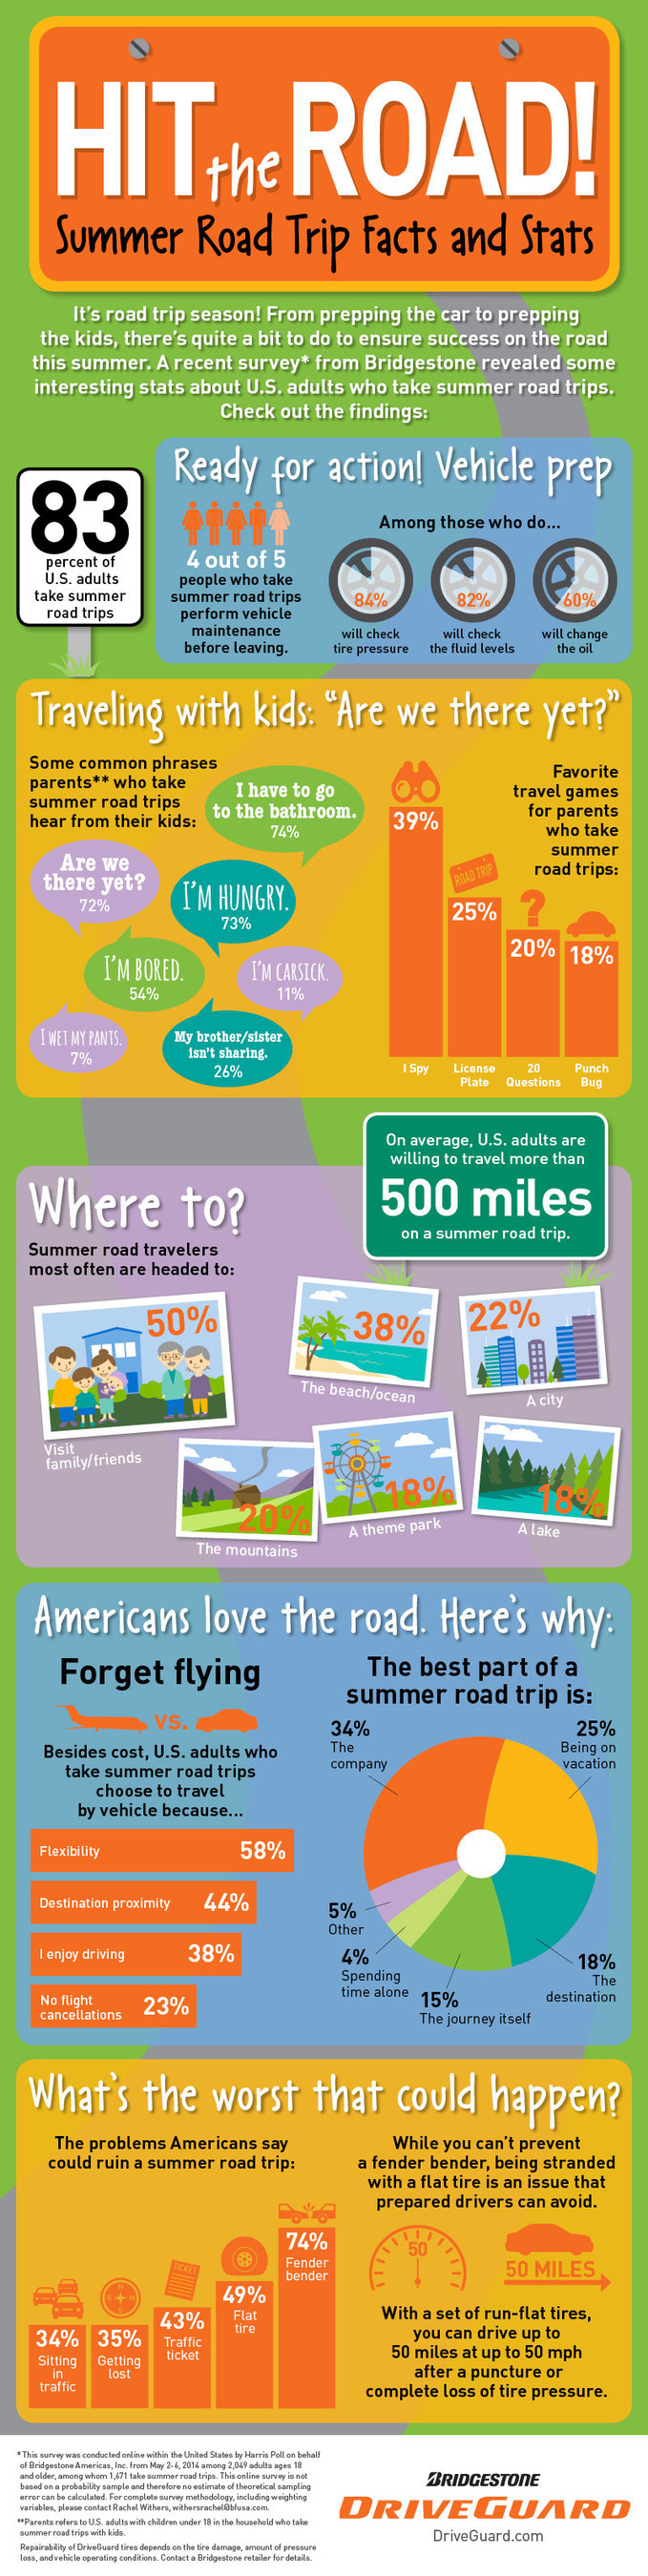 Bridgestone Americas Summer Road Trip Infographic